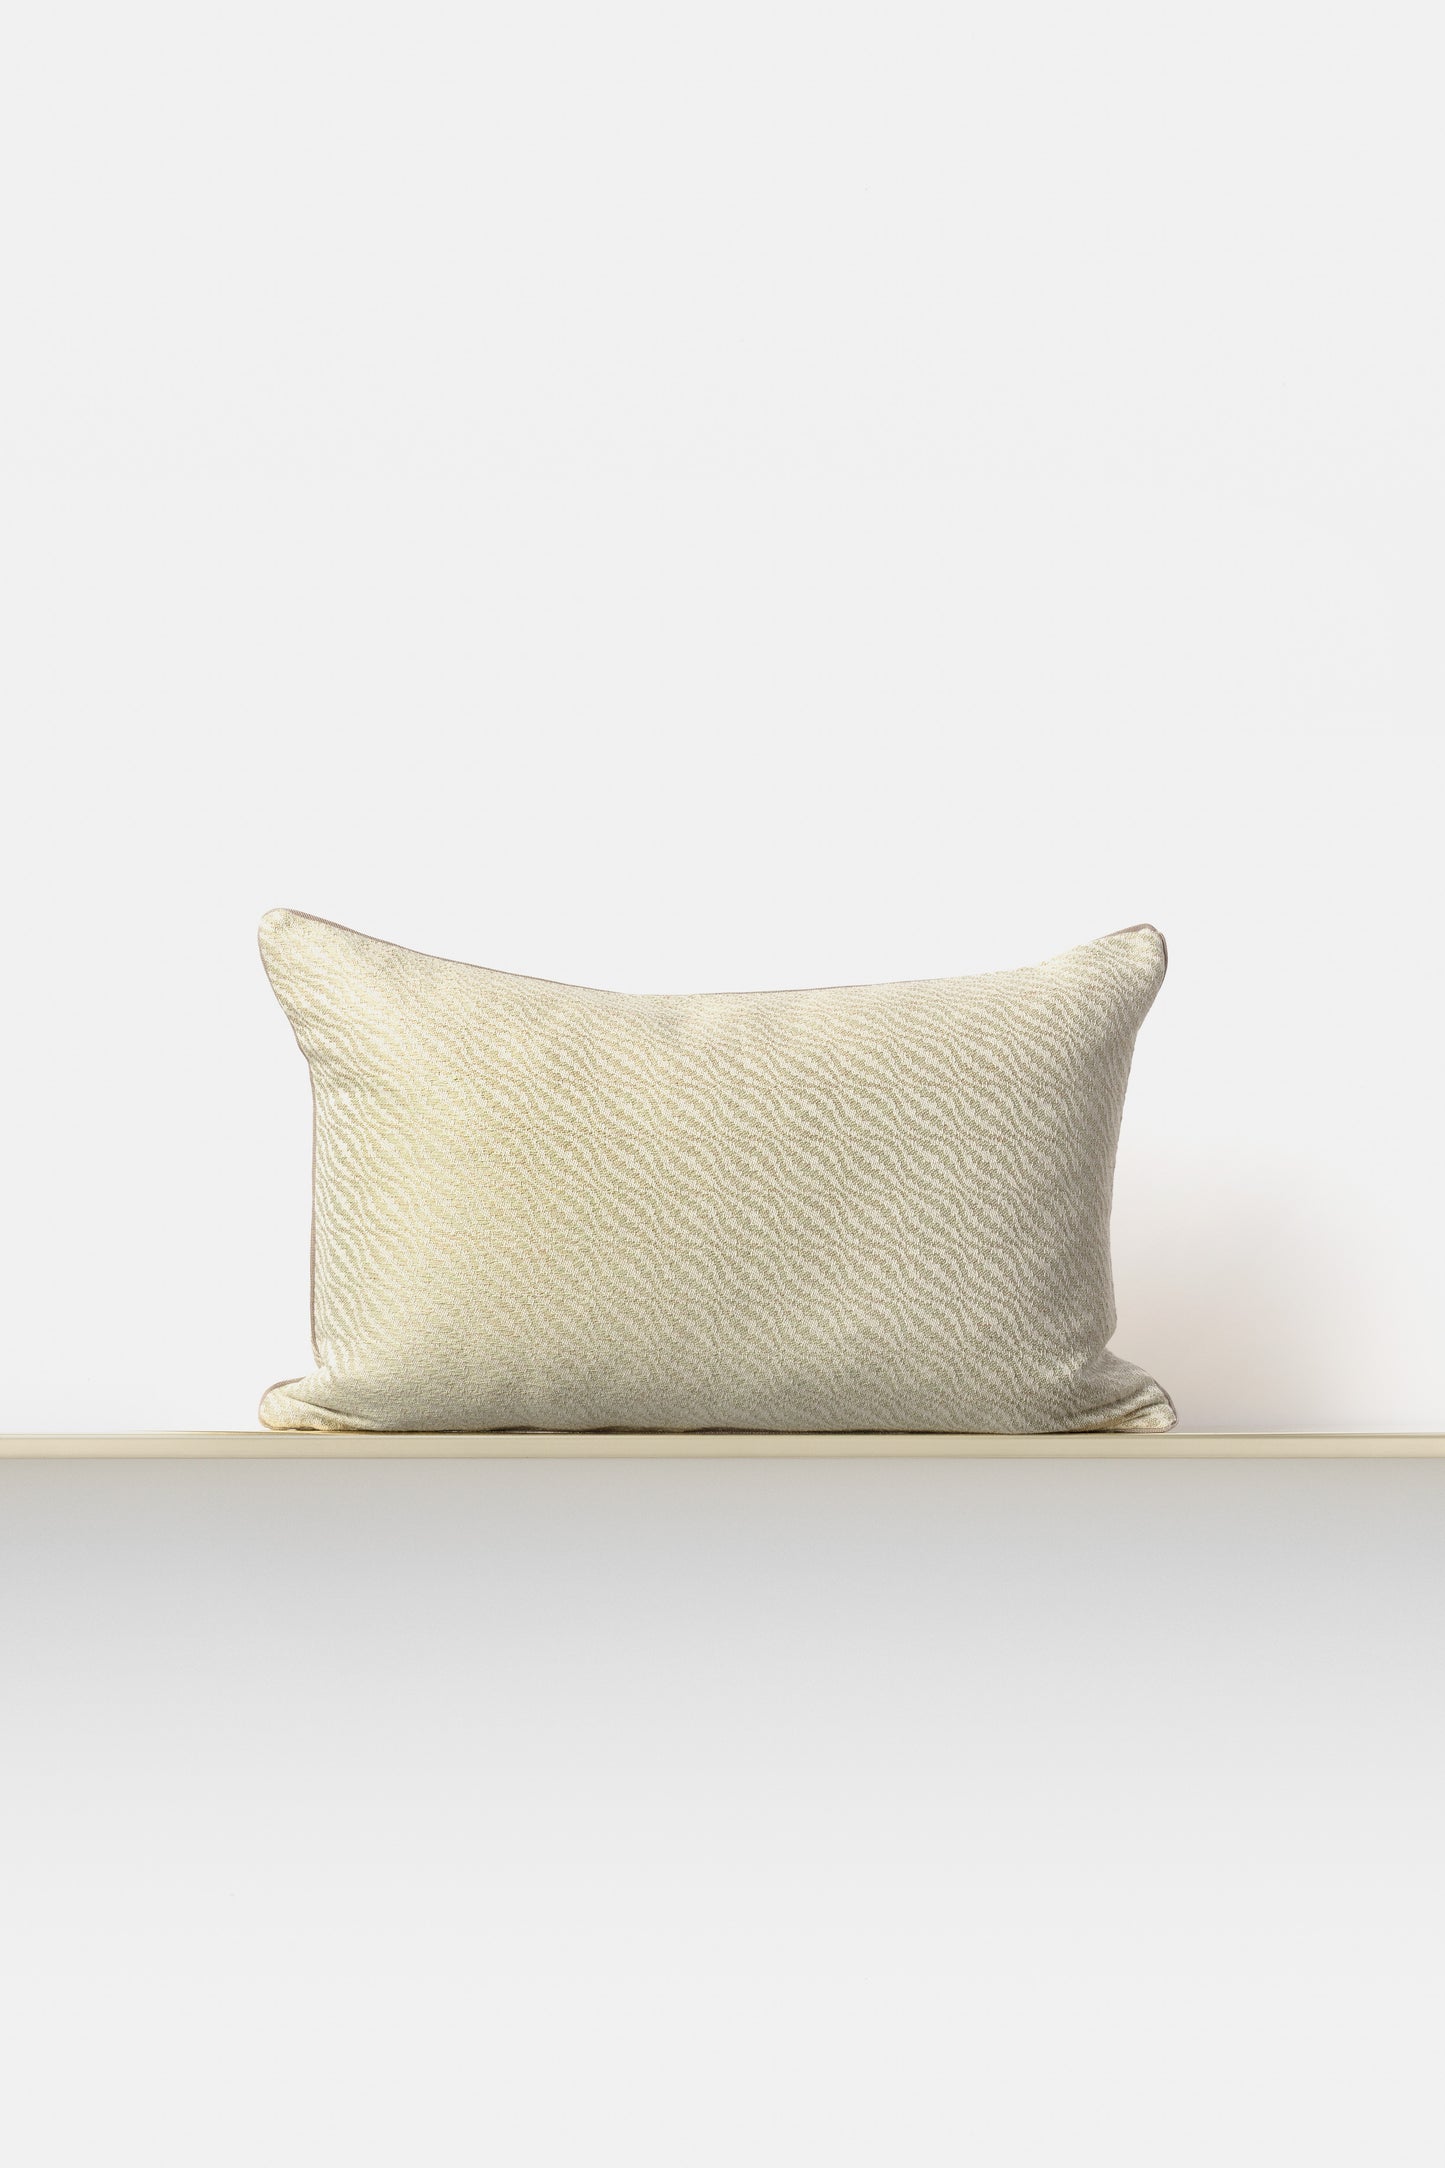 "Lale 11" cushion in Zenzero